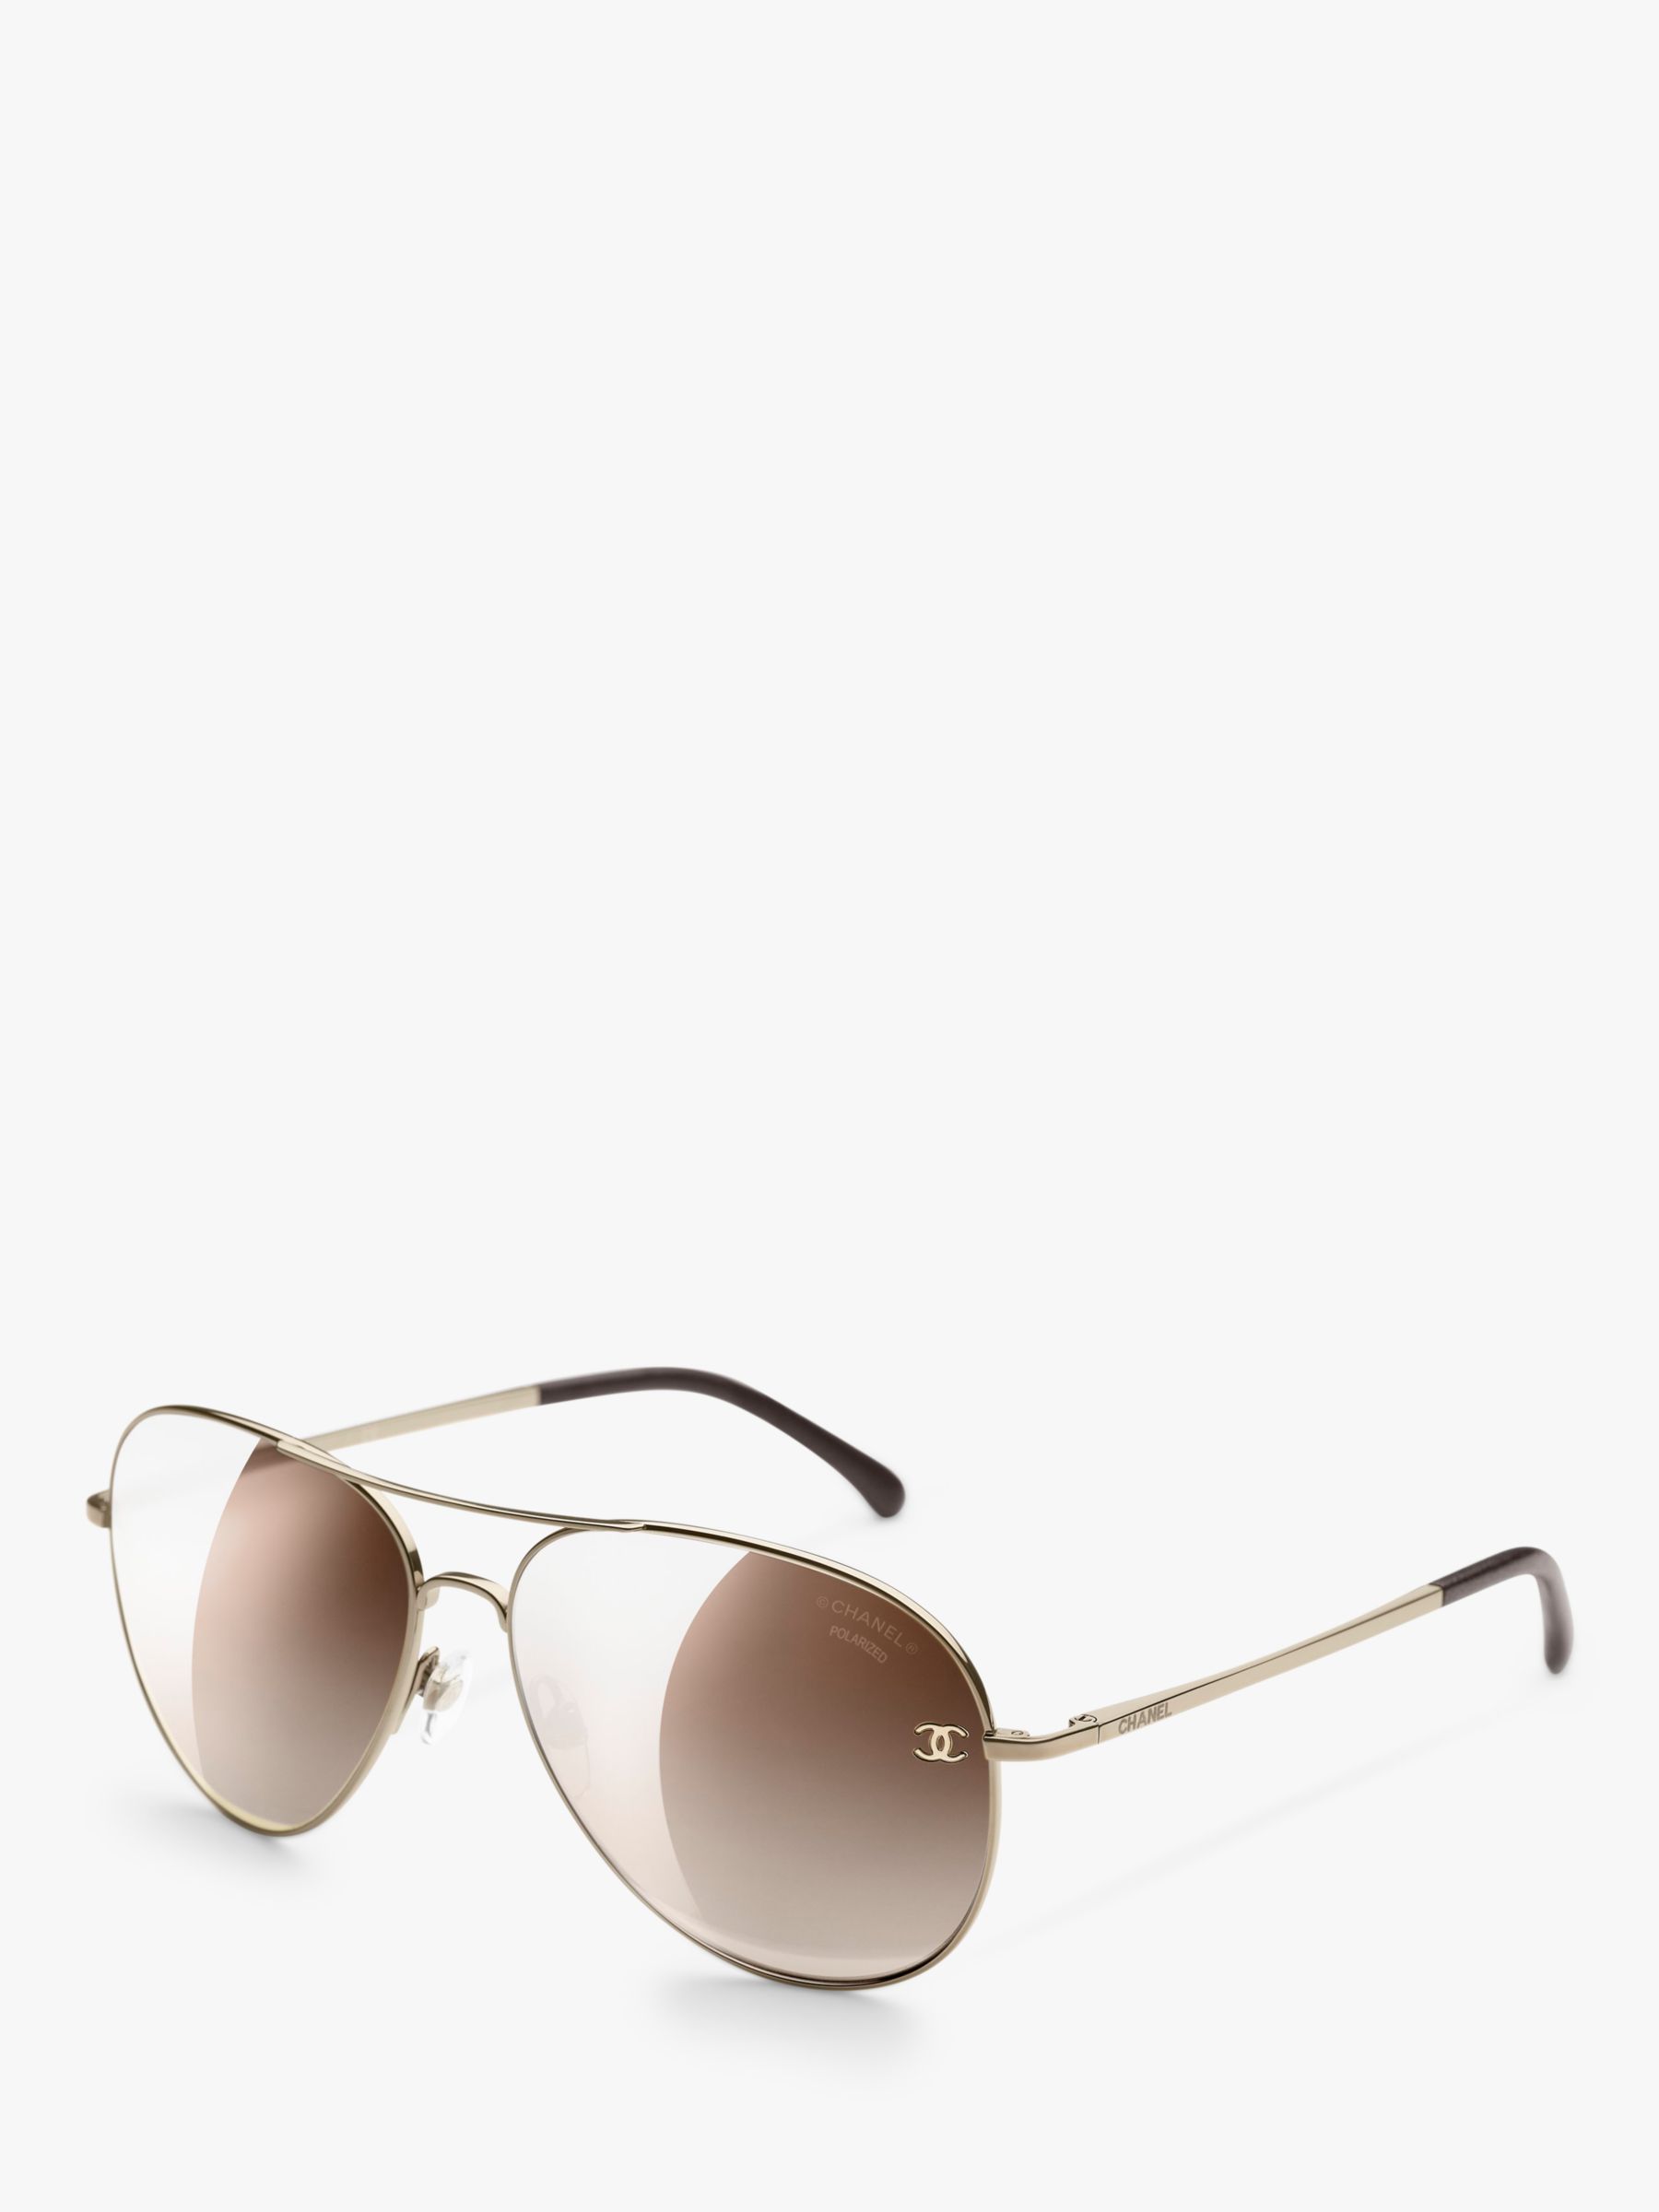 Chanel Pilot Sunglasses CH4189TQ Pale Gold/Brown Gradient